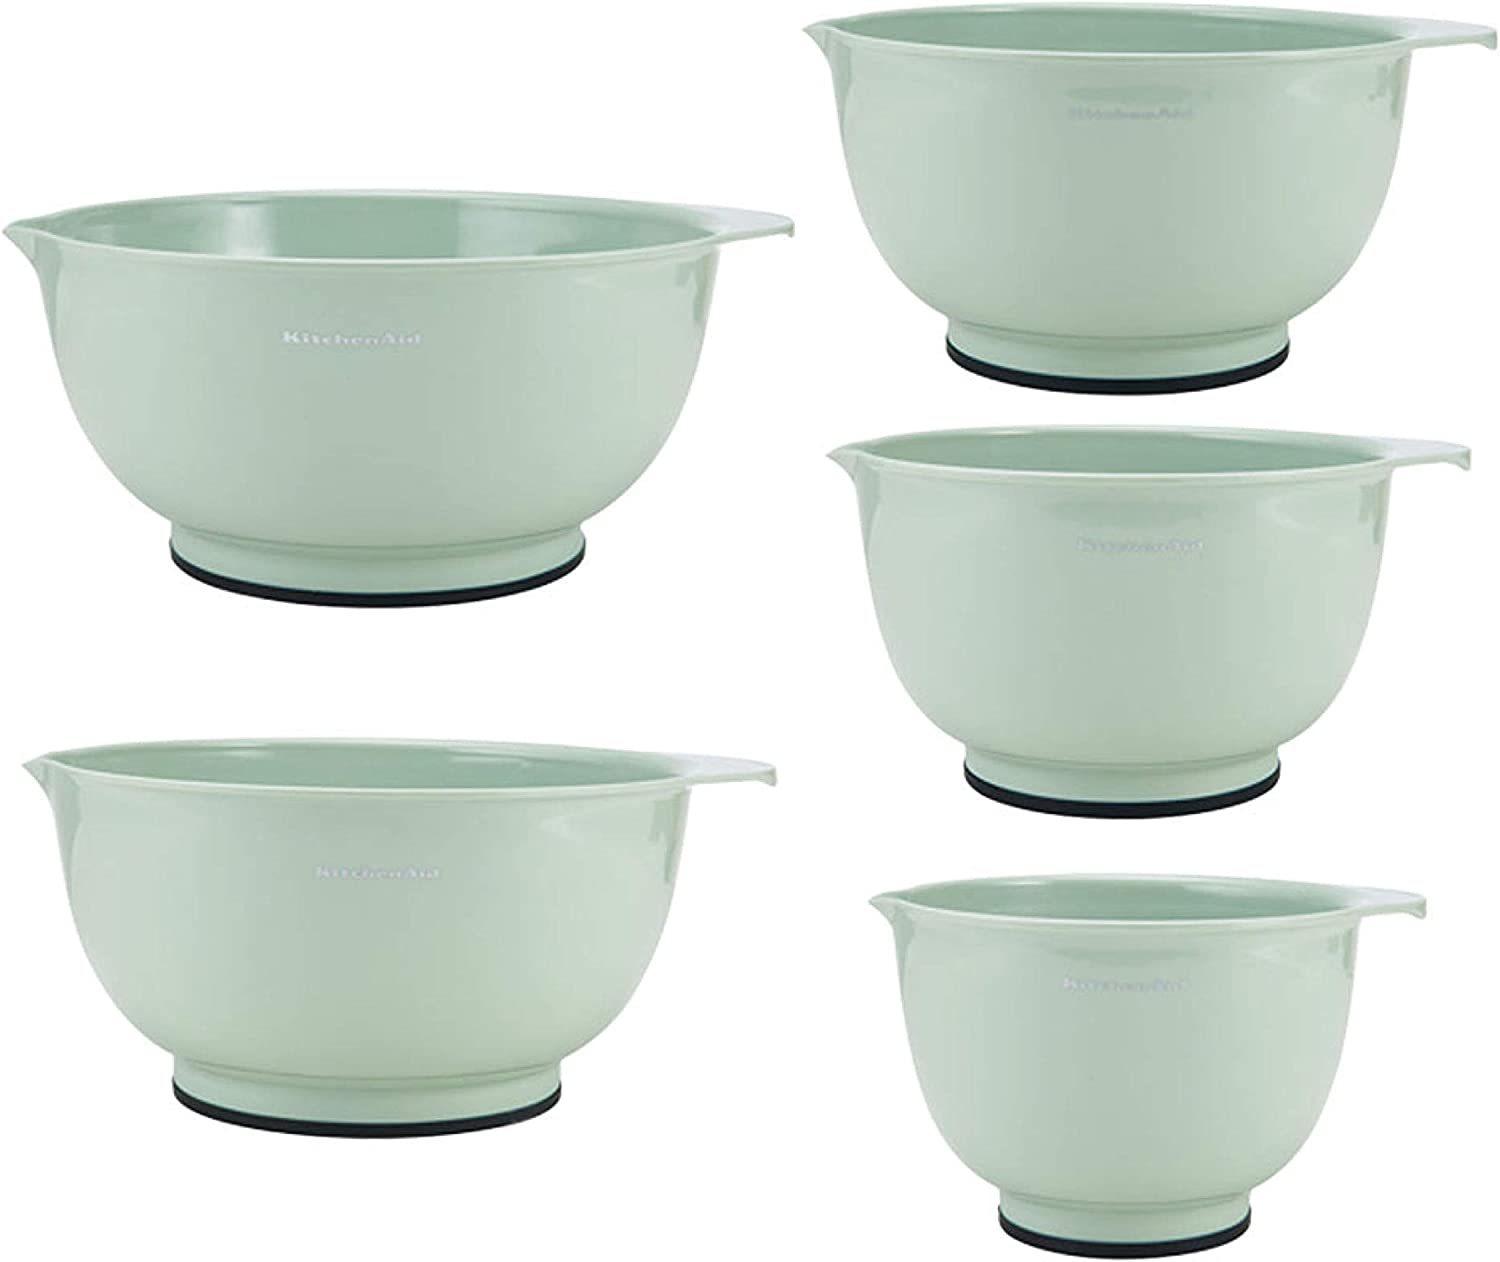 کاسه مخلوط کن کیچن اید KitchenAid Classic Mixing Bowls Set of 5 - ارسال 15 الی 20 روز کاری